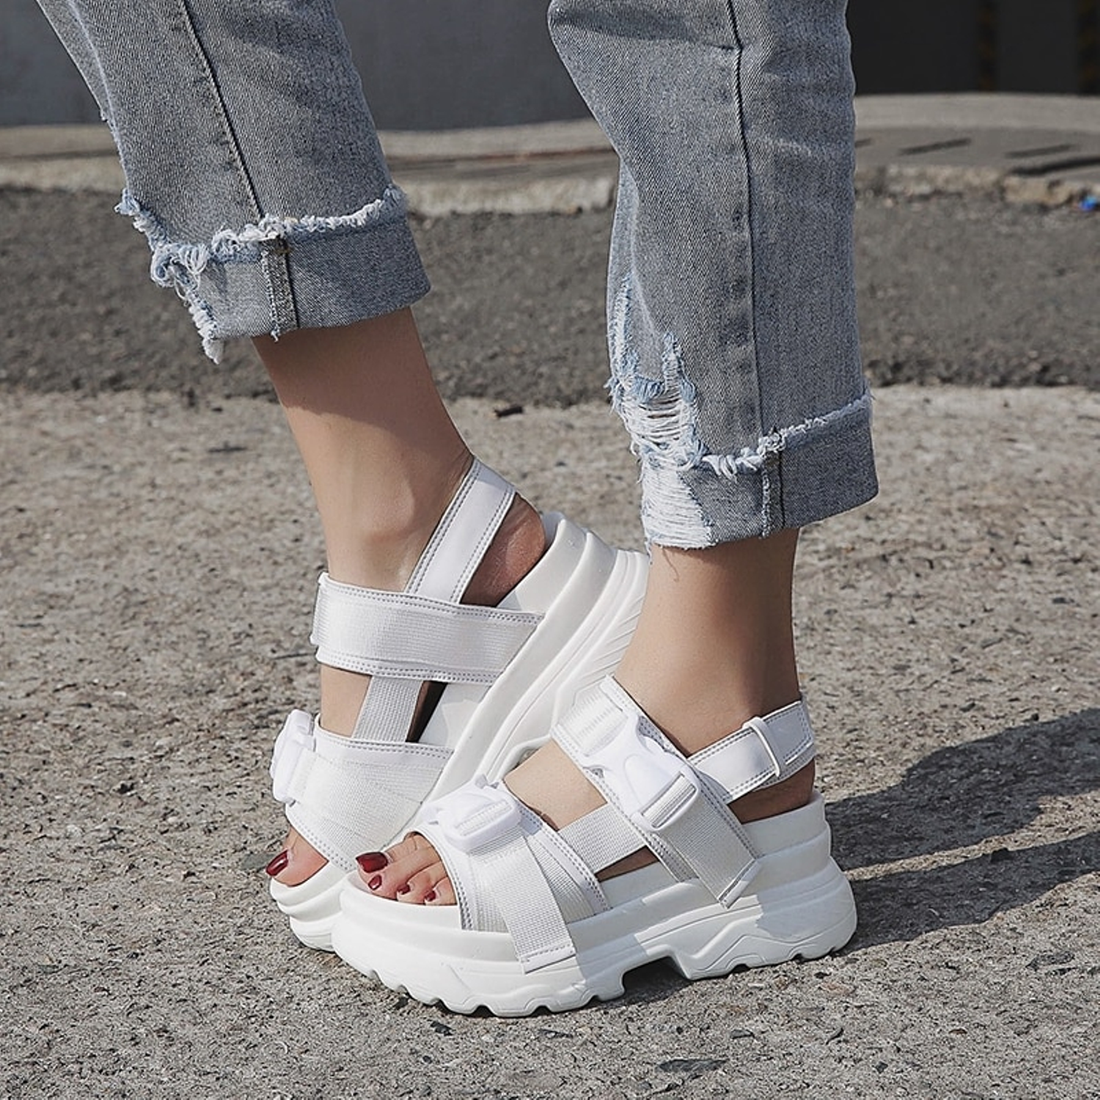 Women's Summer Casual Platform Open Toe Sandals